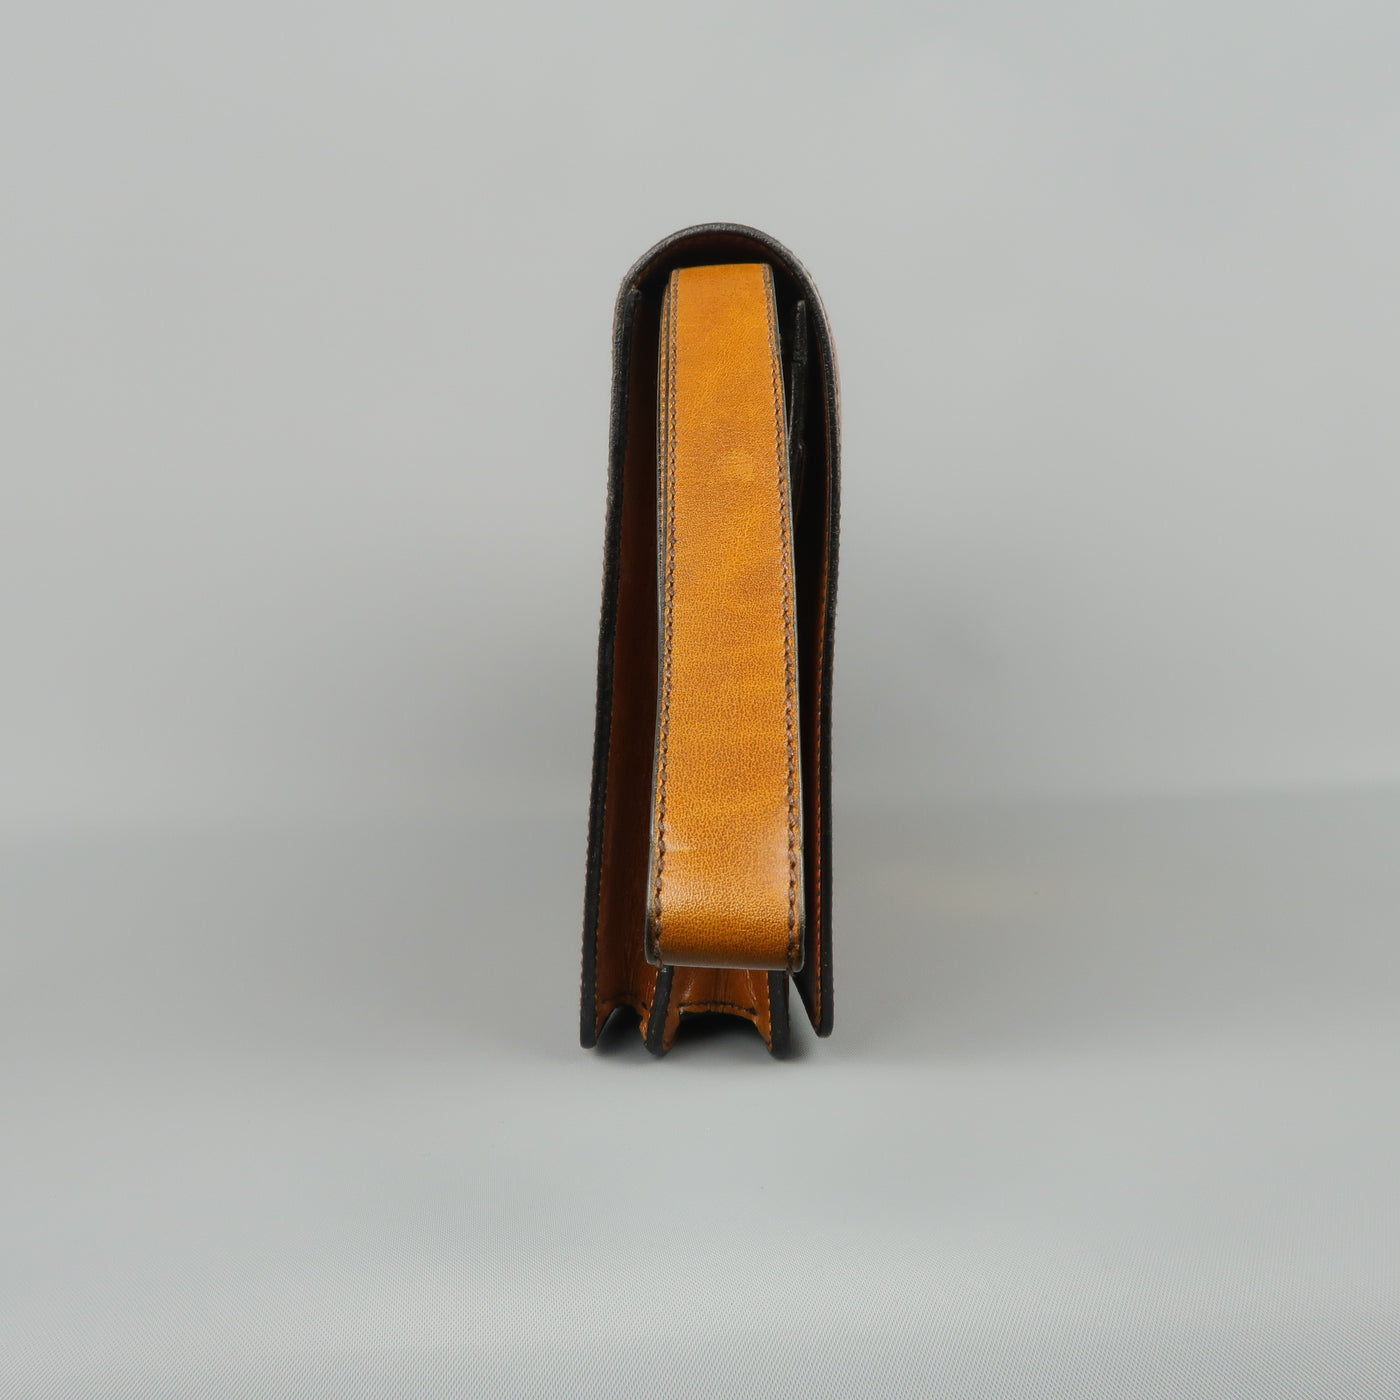 Vintage A.TESTONI Tan Leather Wristlet Clutch